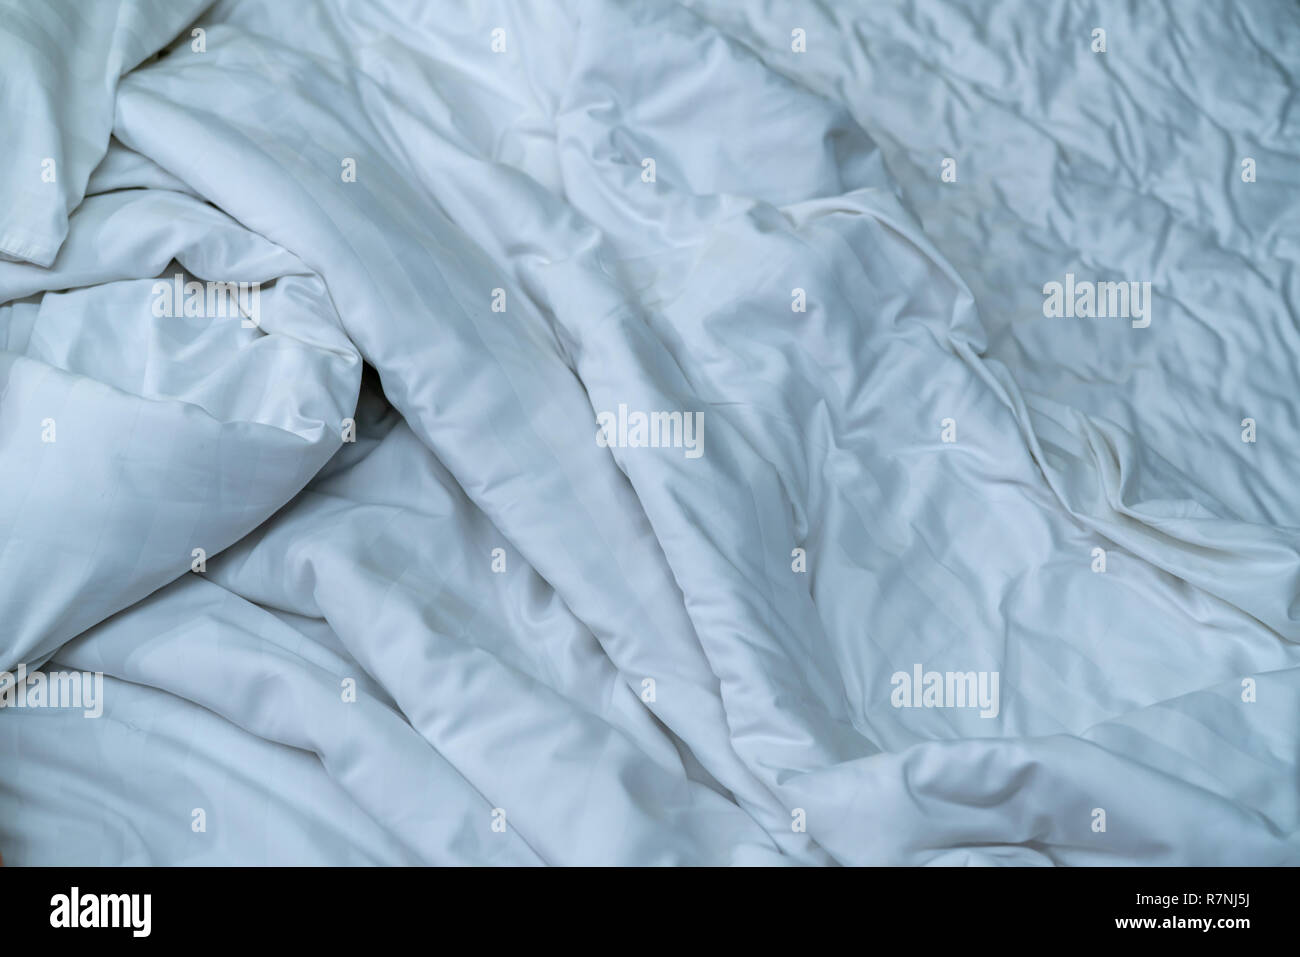 Weiße Bettwäsche Decke im Hotel Schlafzimmer. Nahaufnahme Detail der unordentlichen weiße Decke nach dem Aufwachen am Morgen. Komfortables Bett mit weichen, weißen Bettdecke. Schlafen Stockfoto